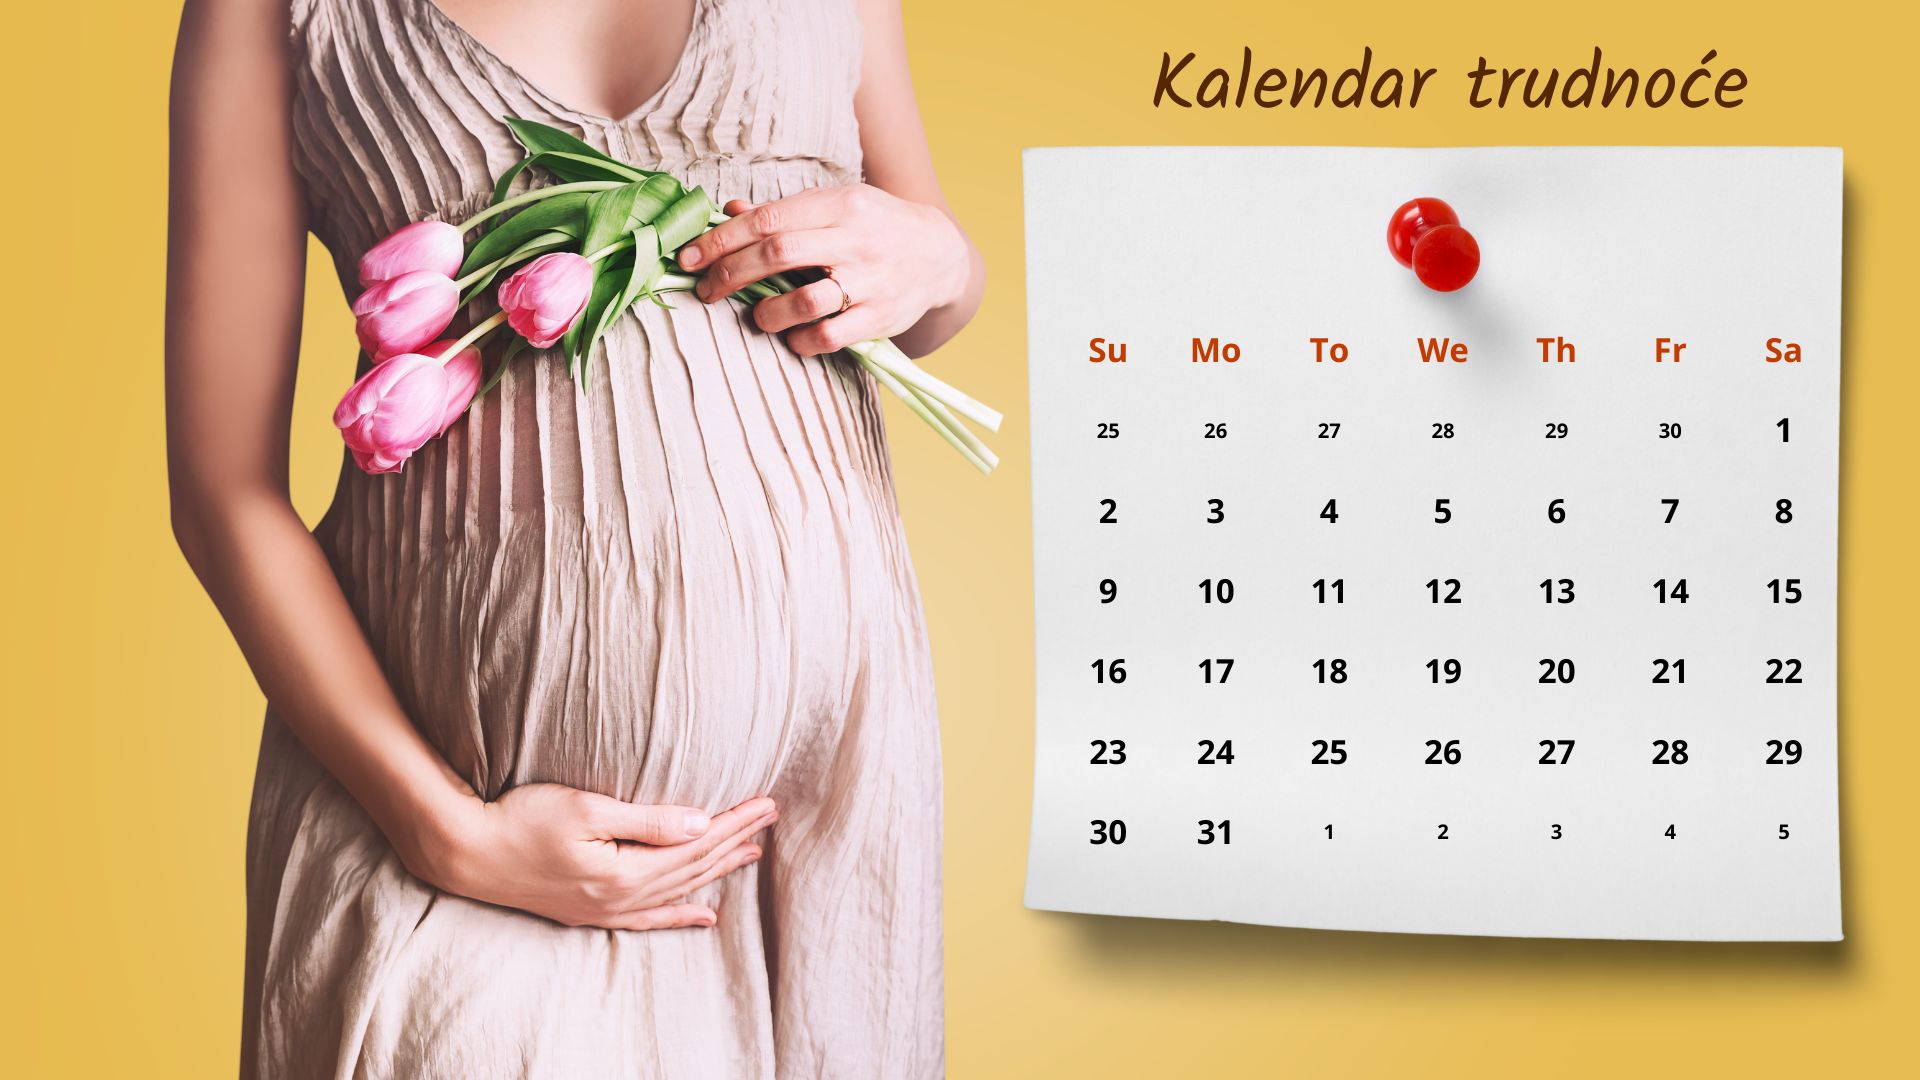 Trudnoca po nedeljama i kalendar trudnoce